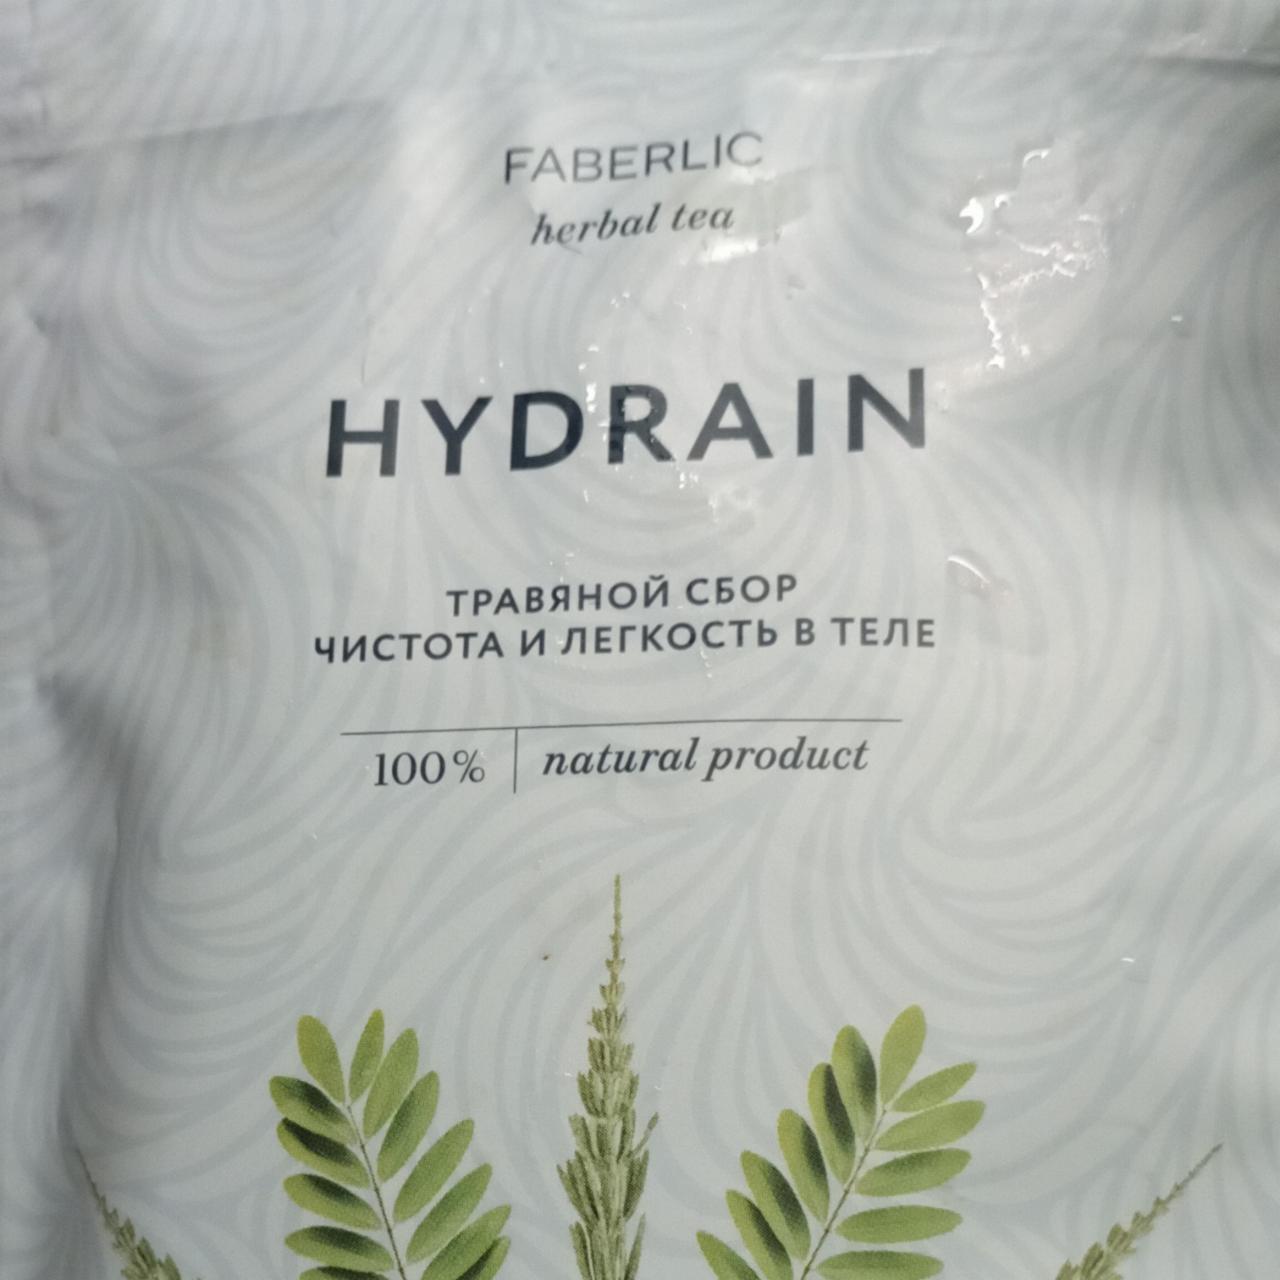 Фото - Чай травяной Hydrain Faberlic